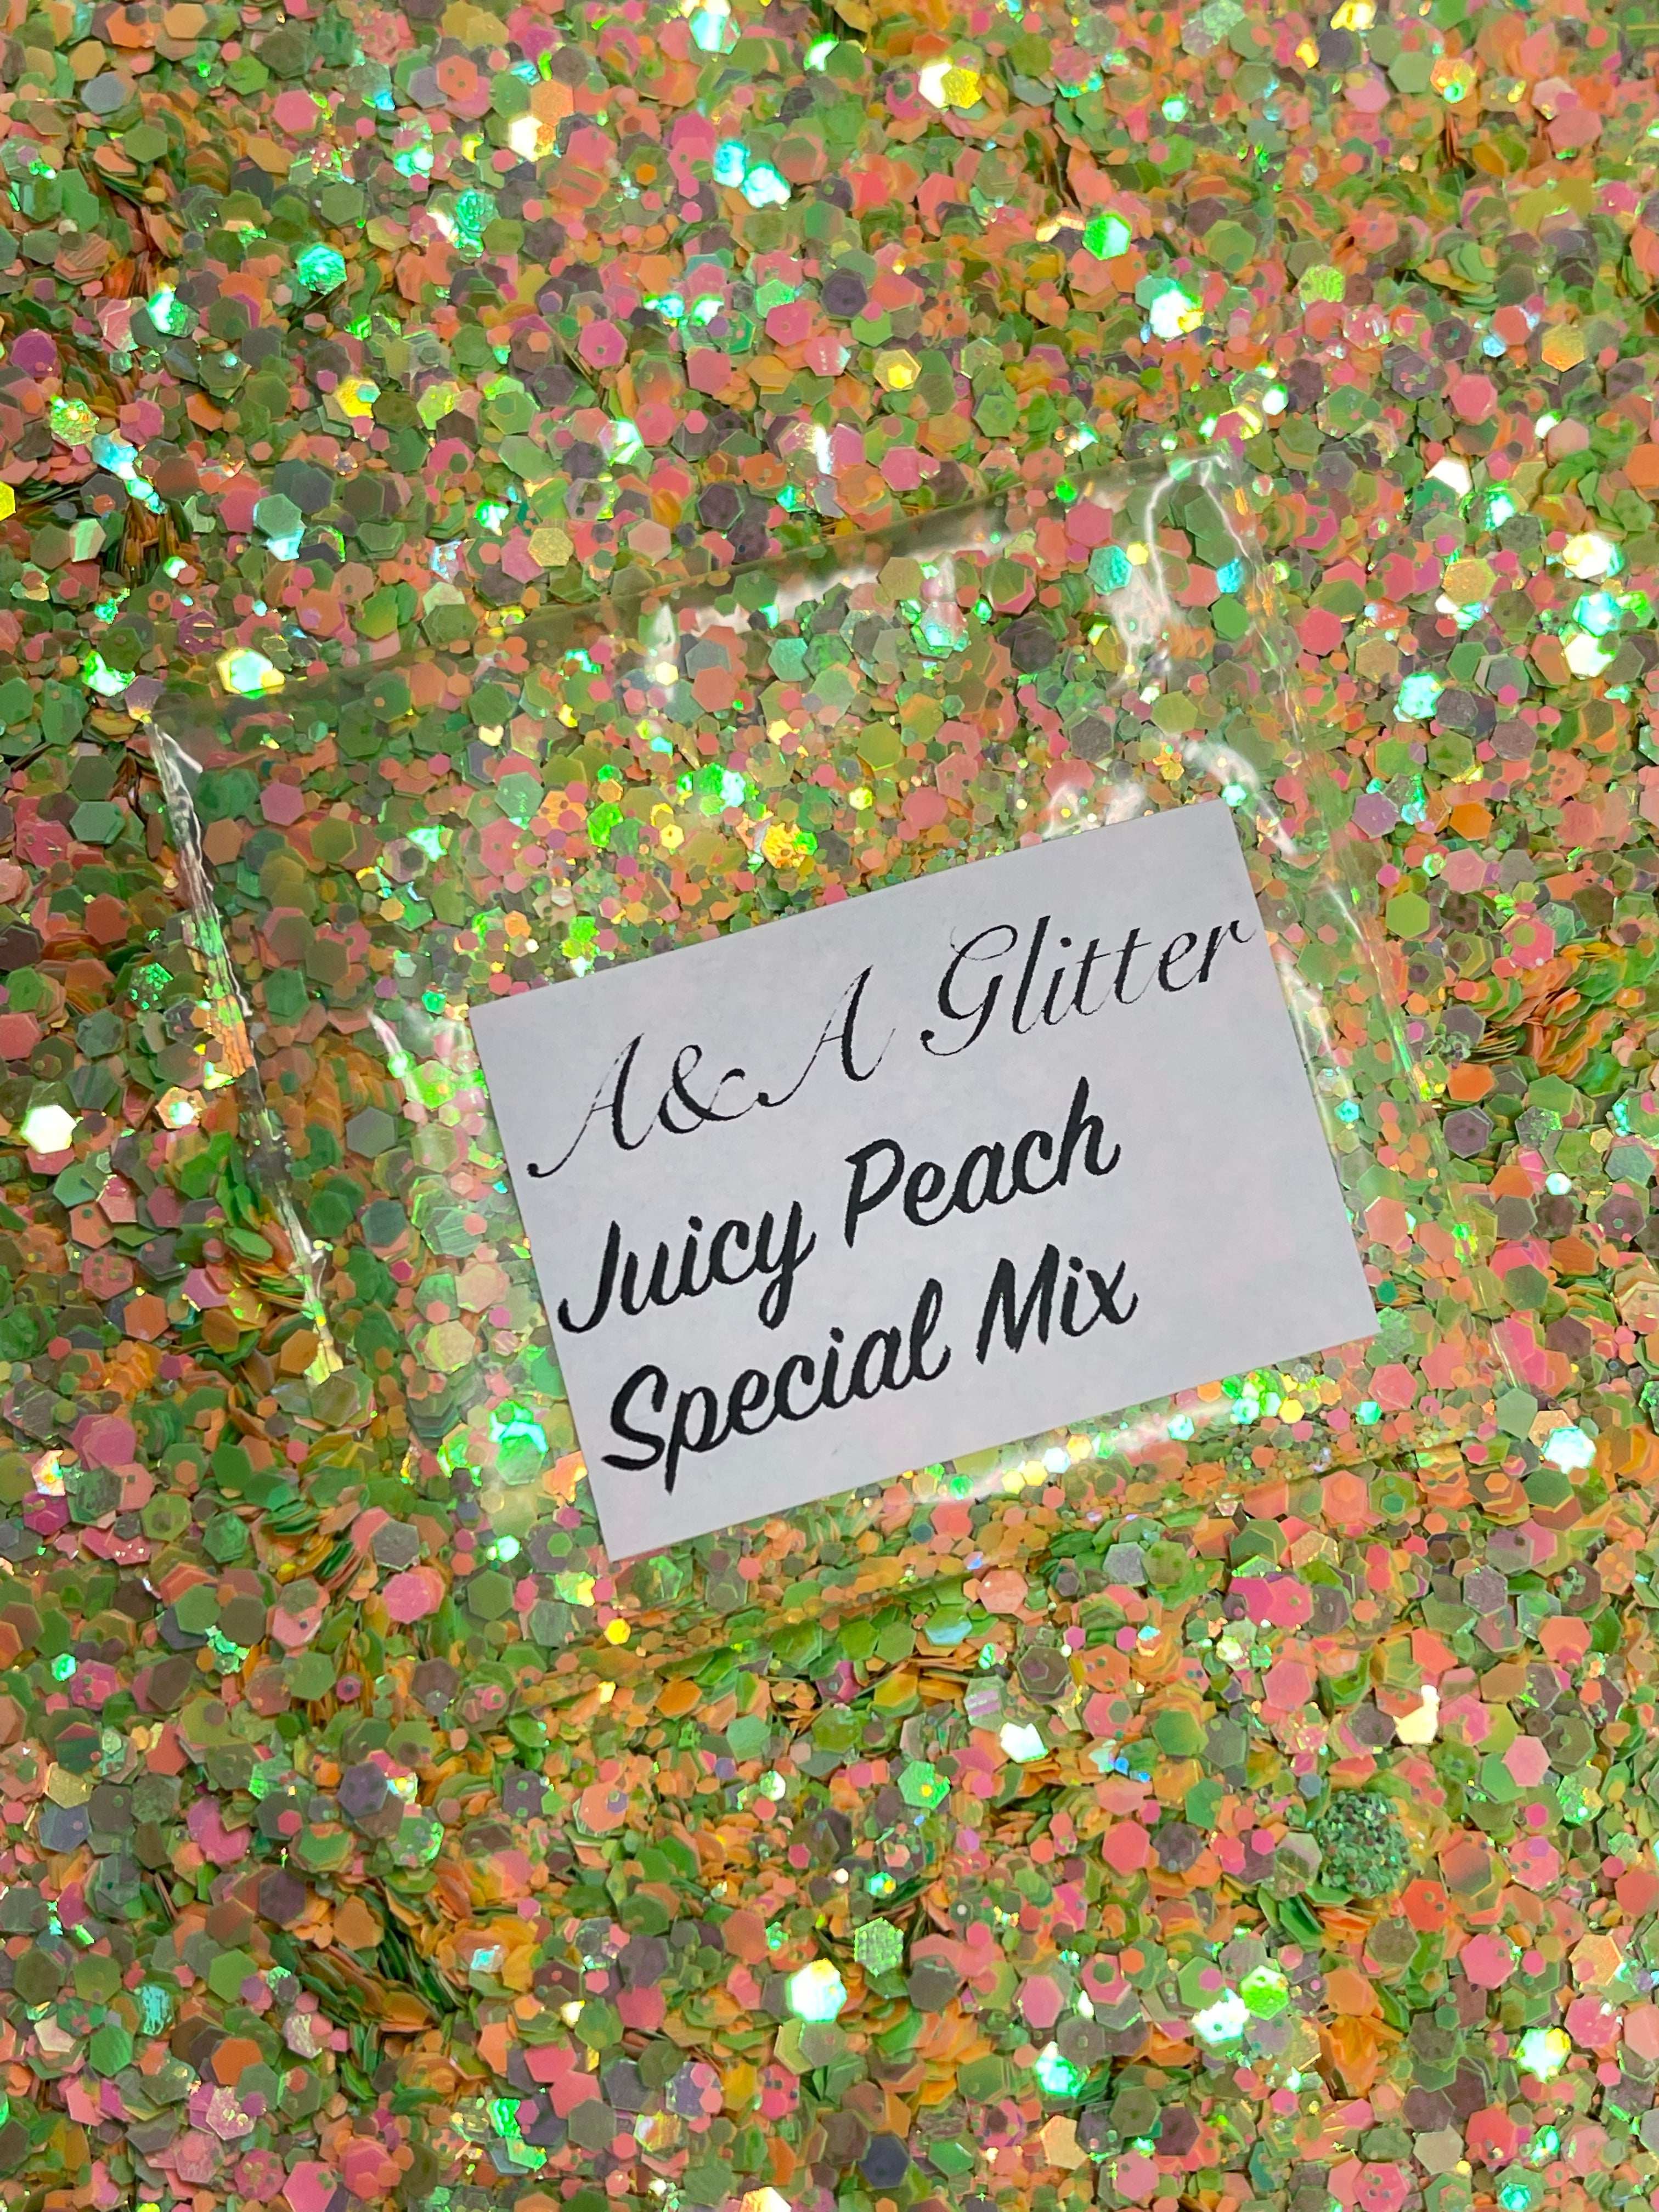 Juicy Peach - Special Mix